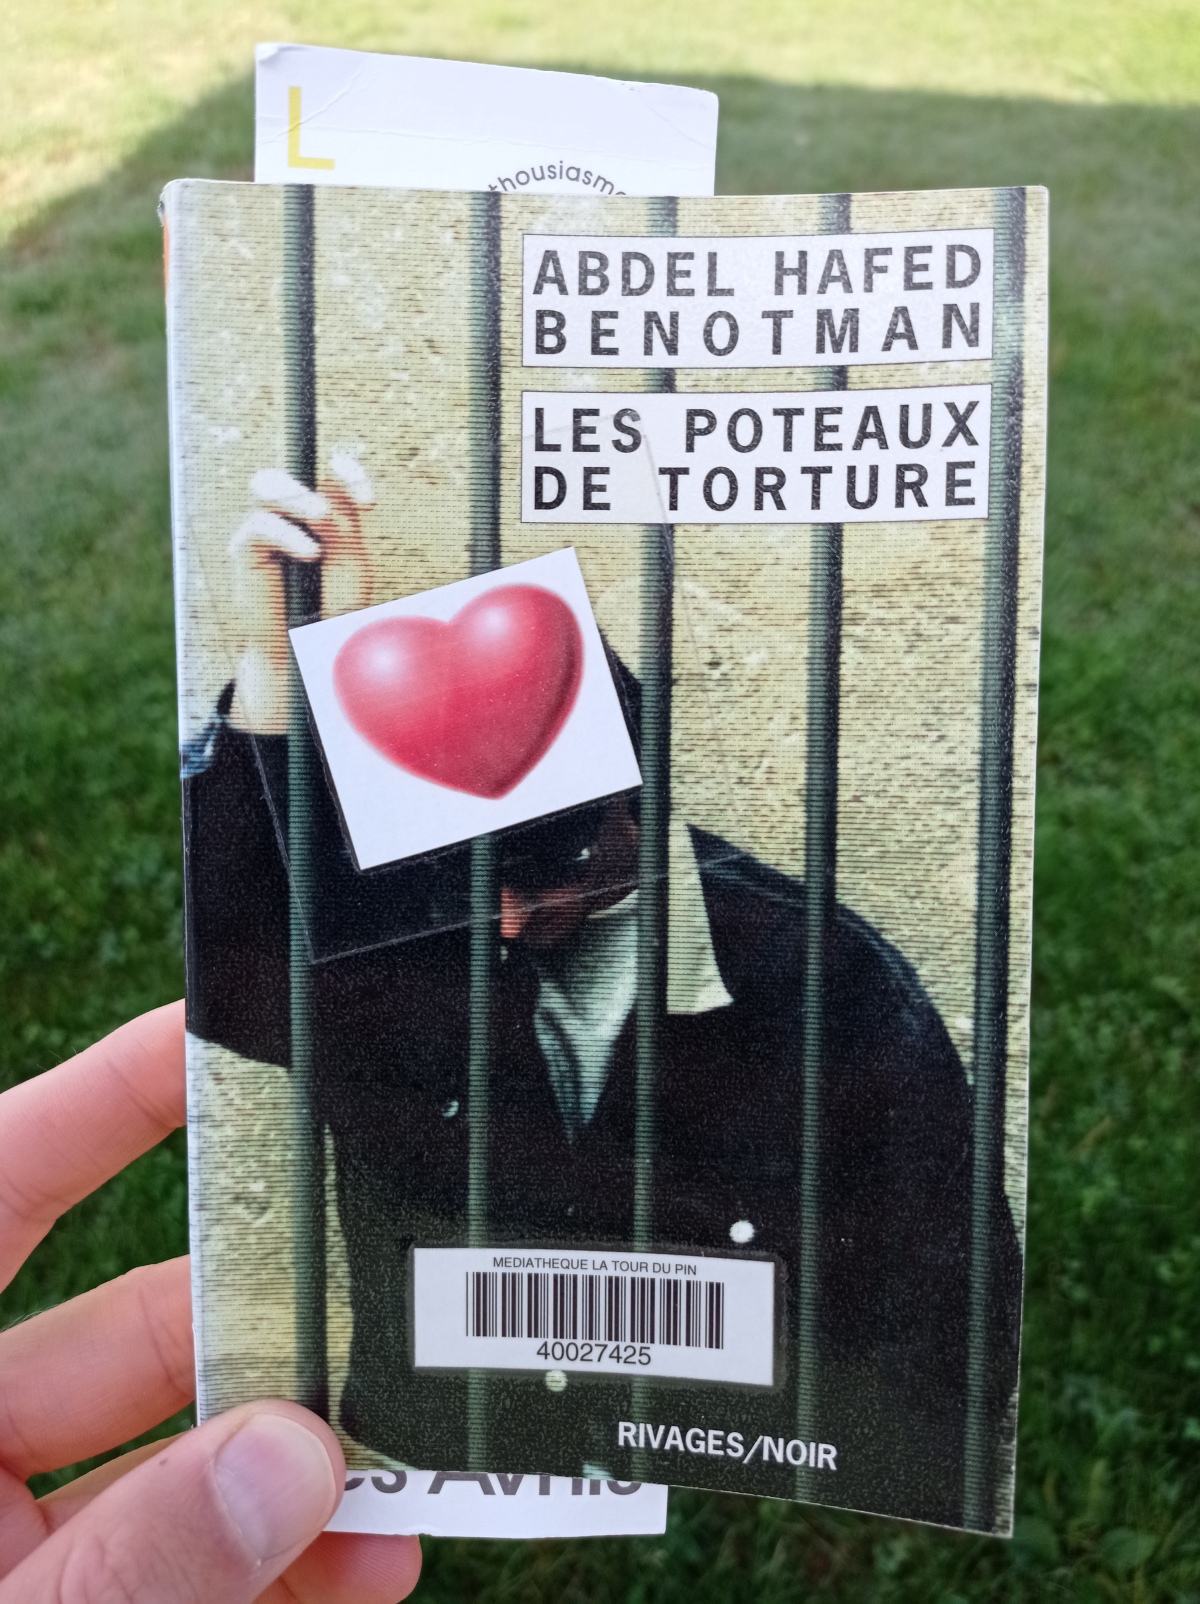 Les Poteaux de torture / Abdel Hafed Benotman